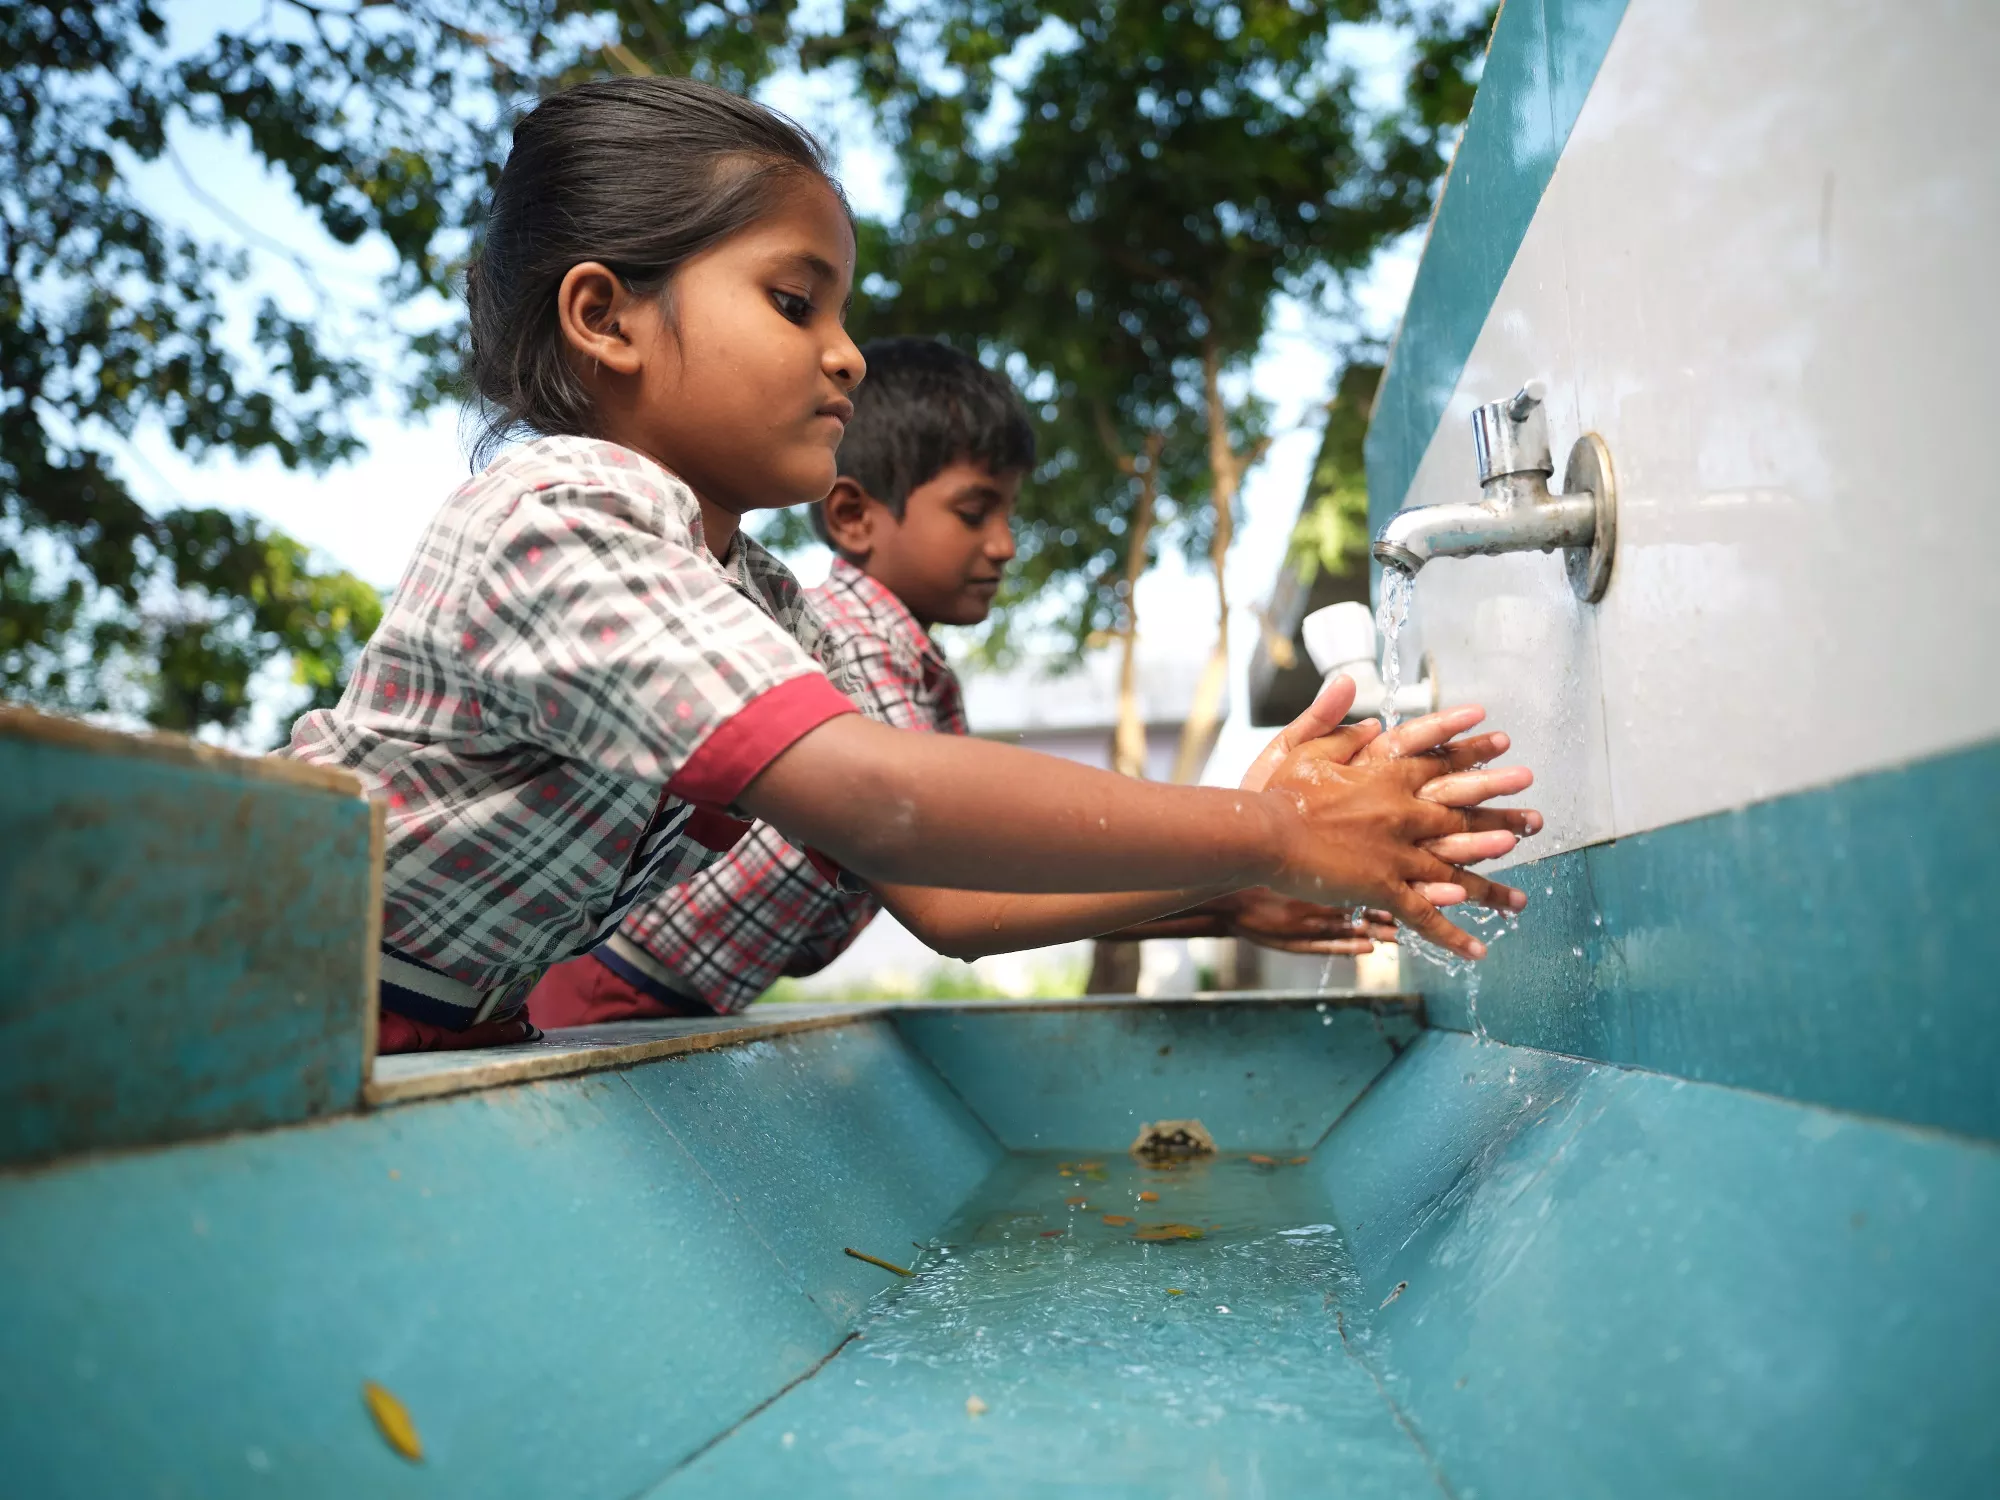 Children washing their hands at their school in Imam Nagar.